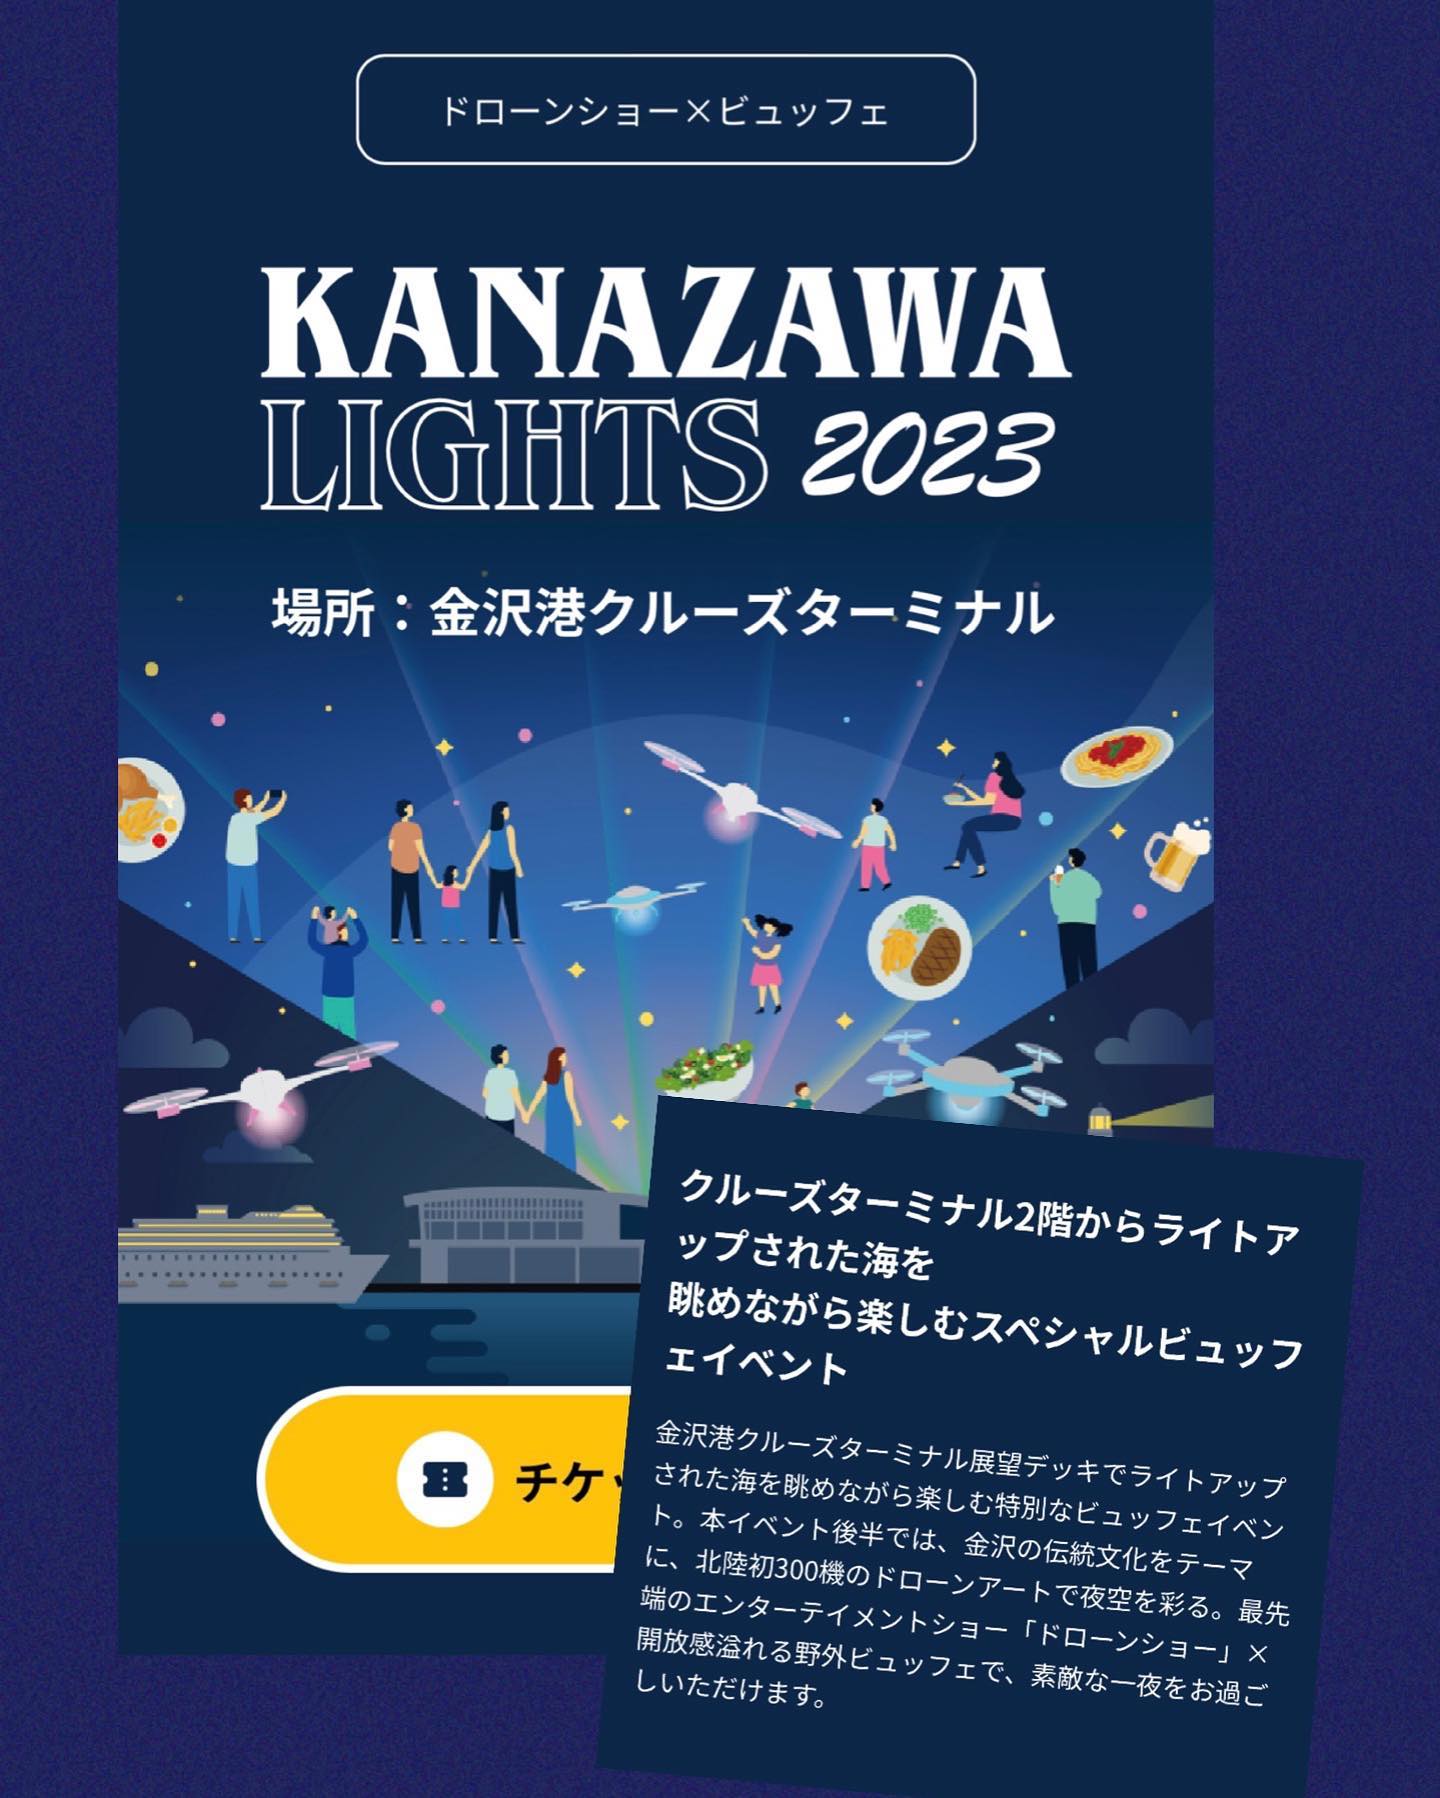 KANAZAWA LIGHTS 2023ドローンショウ×ビュッフェが金沢港クルーズターミナルで開催されますクルーズターミナル2階からライトアップされた海を眺めながら楽しむ開放感溢れる野外ビュッフェイベント北陸発300機のドローンアートが夜空を彩る最先端のエンターテインメントショウです家族で楽しむも良し子供さんにとっても忘れられない思い出になること間違いなし！そしてデートで行くのも素敵だろうな～♪美味しいビュッフェ料理と飲み放題だし♪是非お早めにご予約を！詳しくは！droneshowjp▽follow me▽@letemps22#カフェバー #Cafebar#心地よい空間#金沢片町  #楽しいひと時#CafeBAR_Le_temps#カフェバー_るたん#おひとり様でも #犀川沿いの夜景#お酒と音楽が楽しめる店#歌えるカフェバー#金沢片町カラオケ #静岡出身です#猫好きです#コンパ開催してます#KANAZAWALIGHTS2023#ドローンショウ_ビュッフェ#ドローンショウ#金沢港クルーズターミナルランチ - 金沢片町るたん